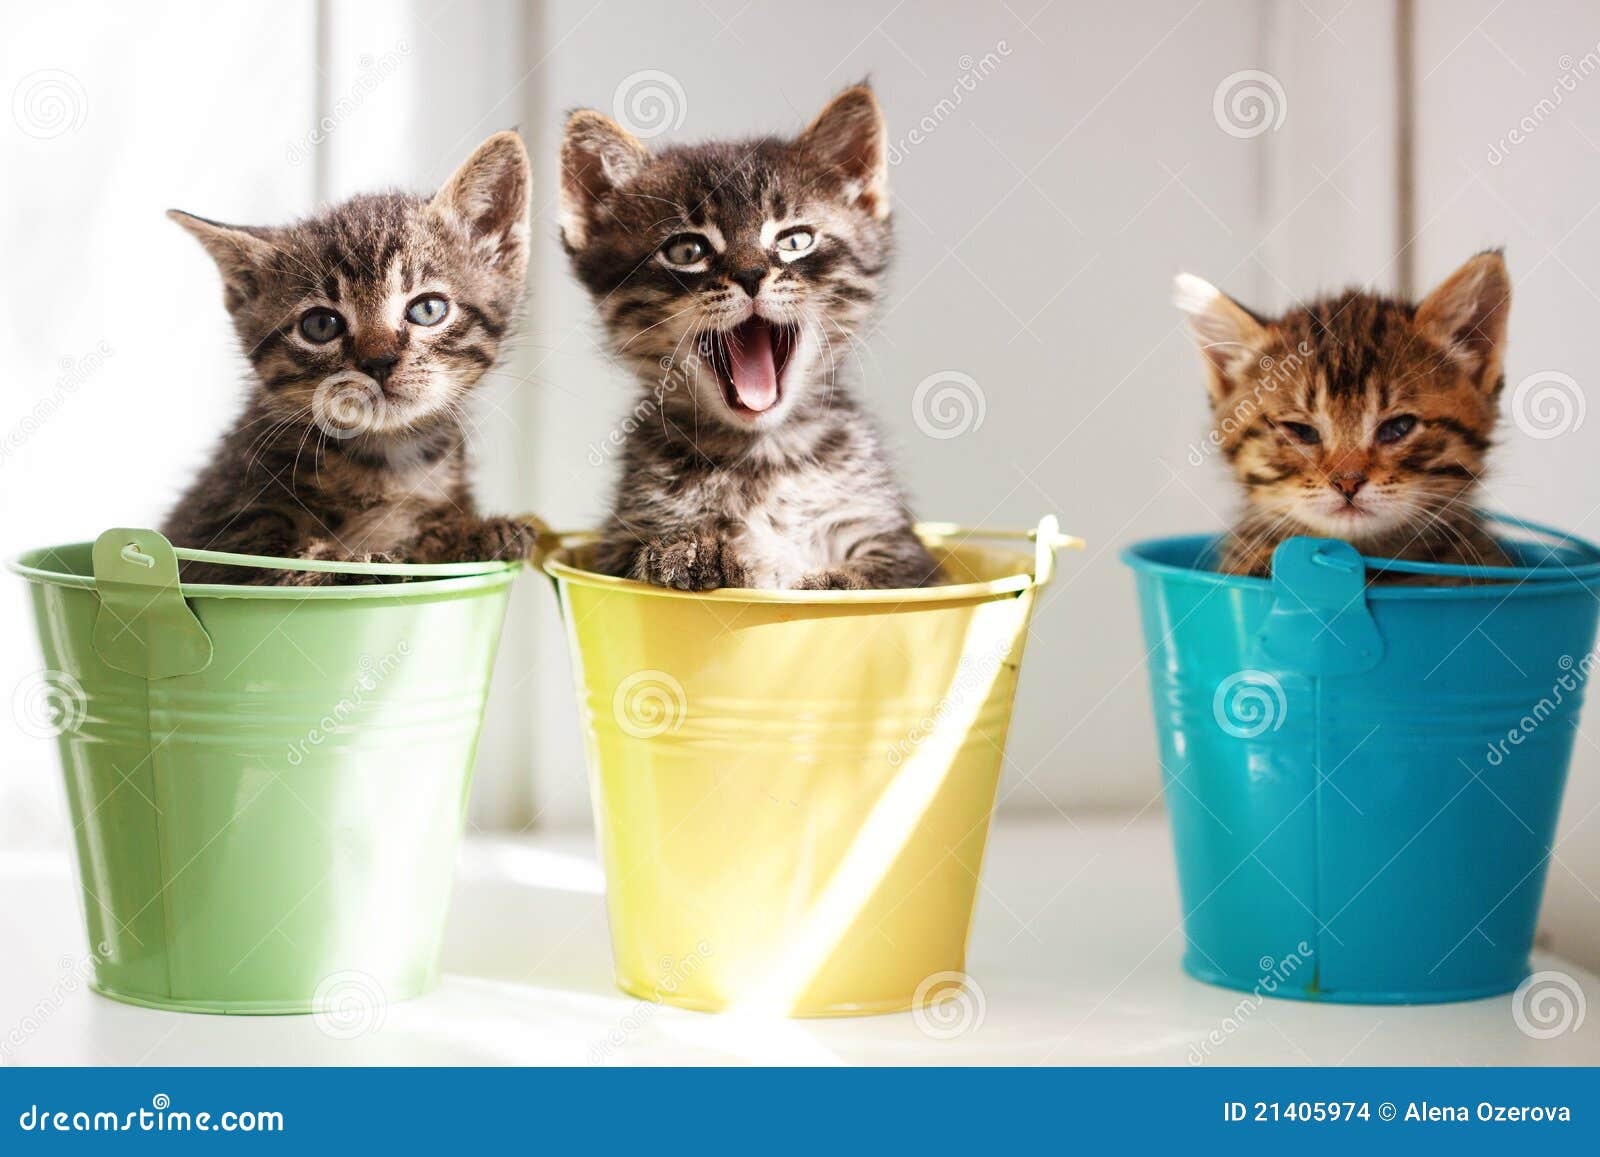 funny kittens